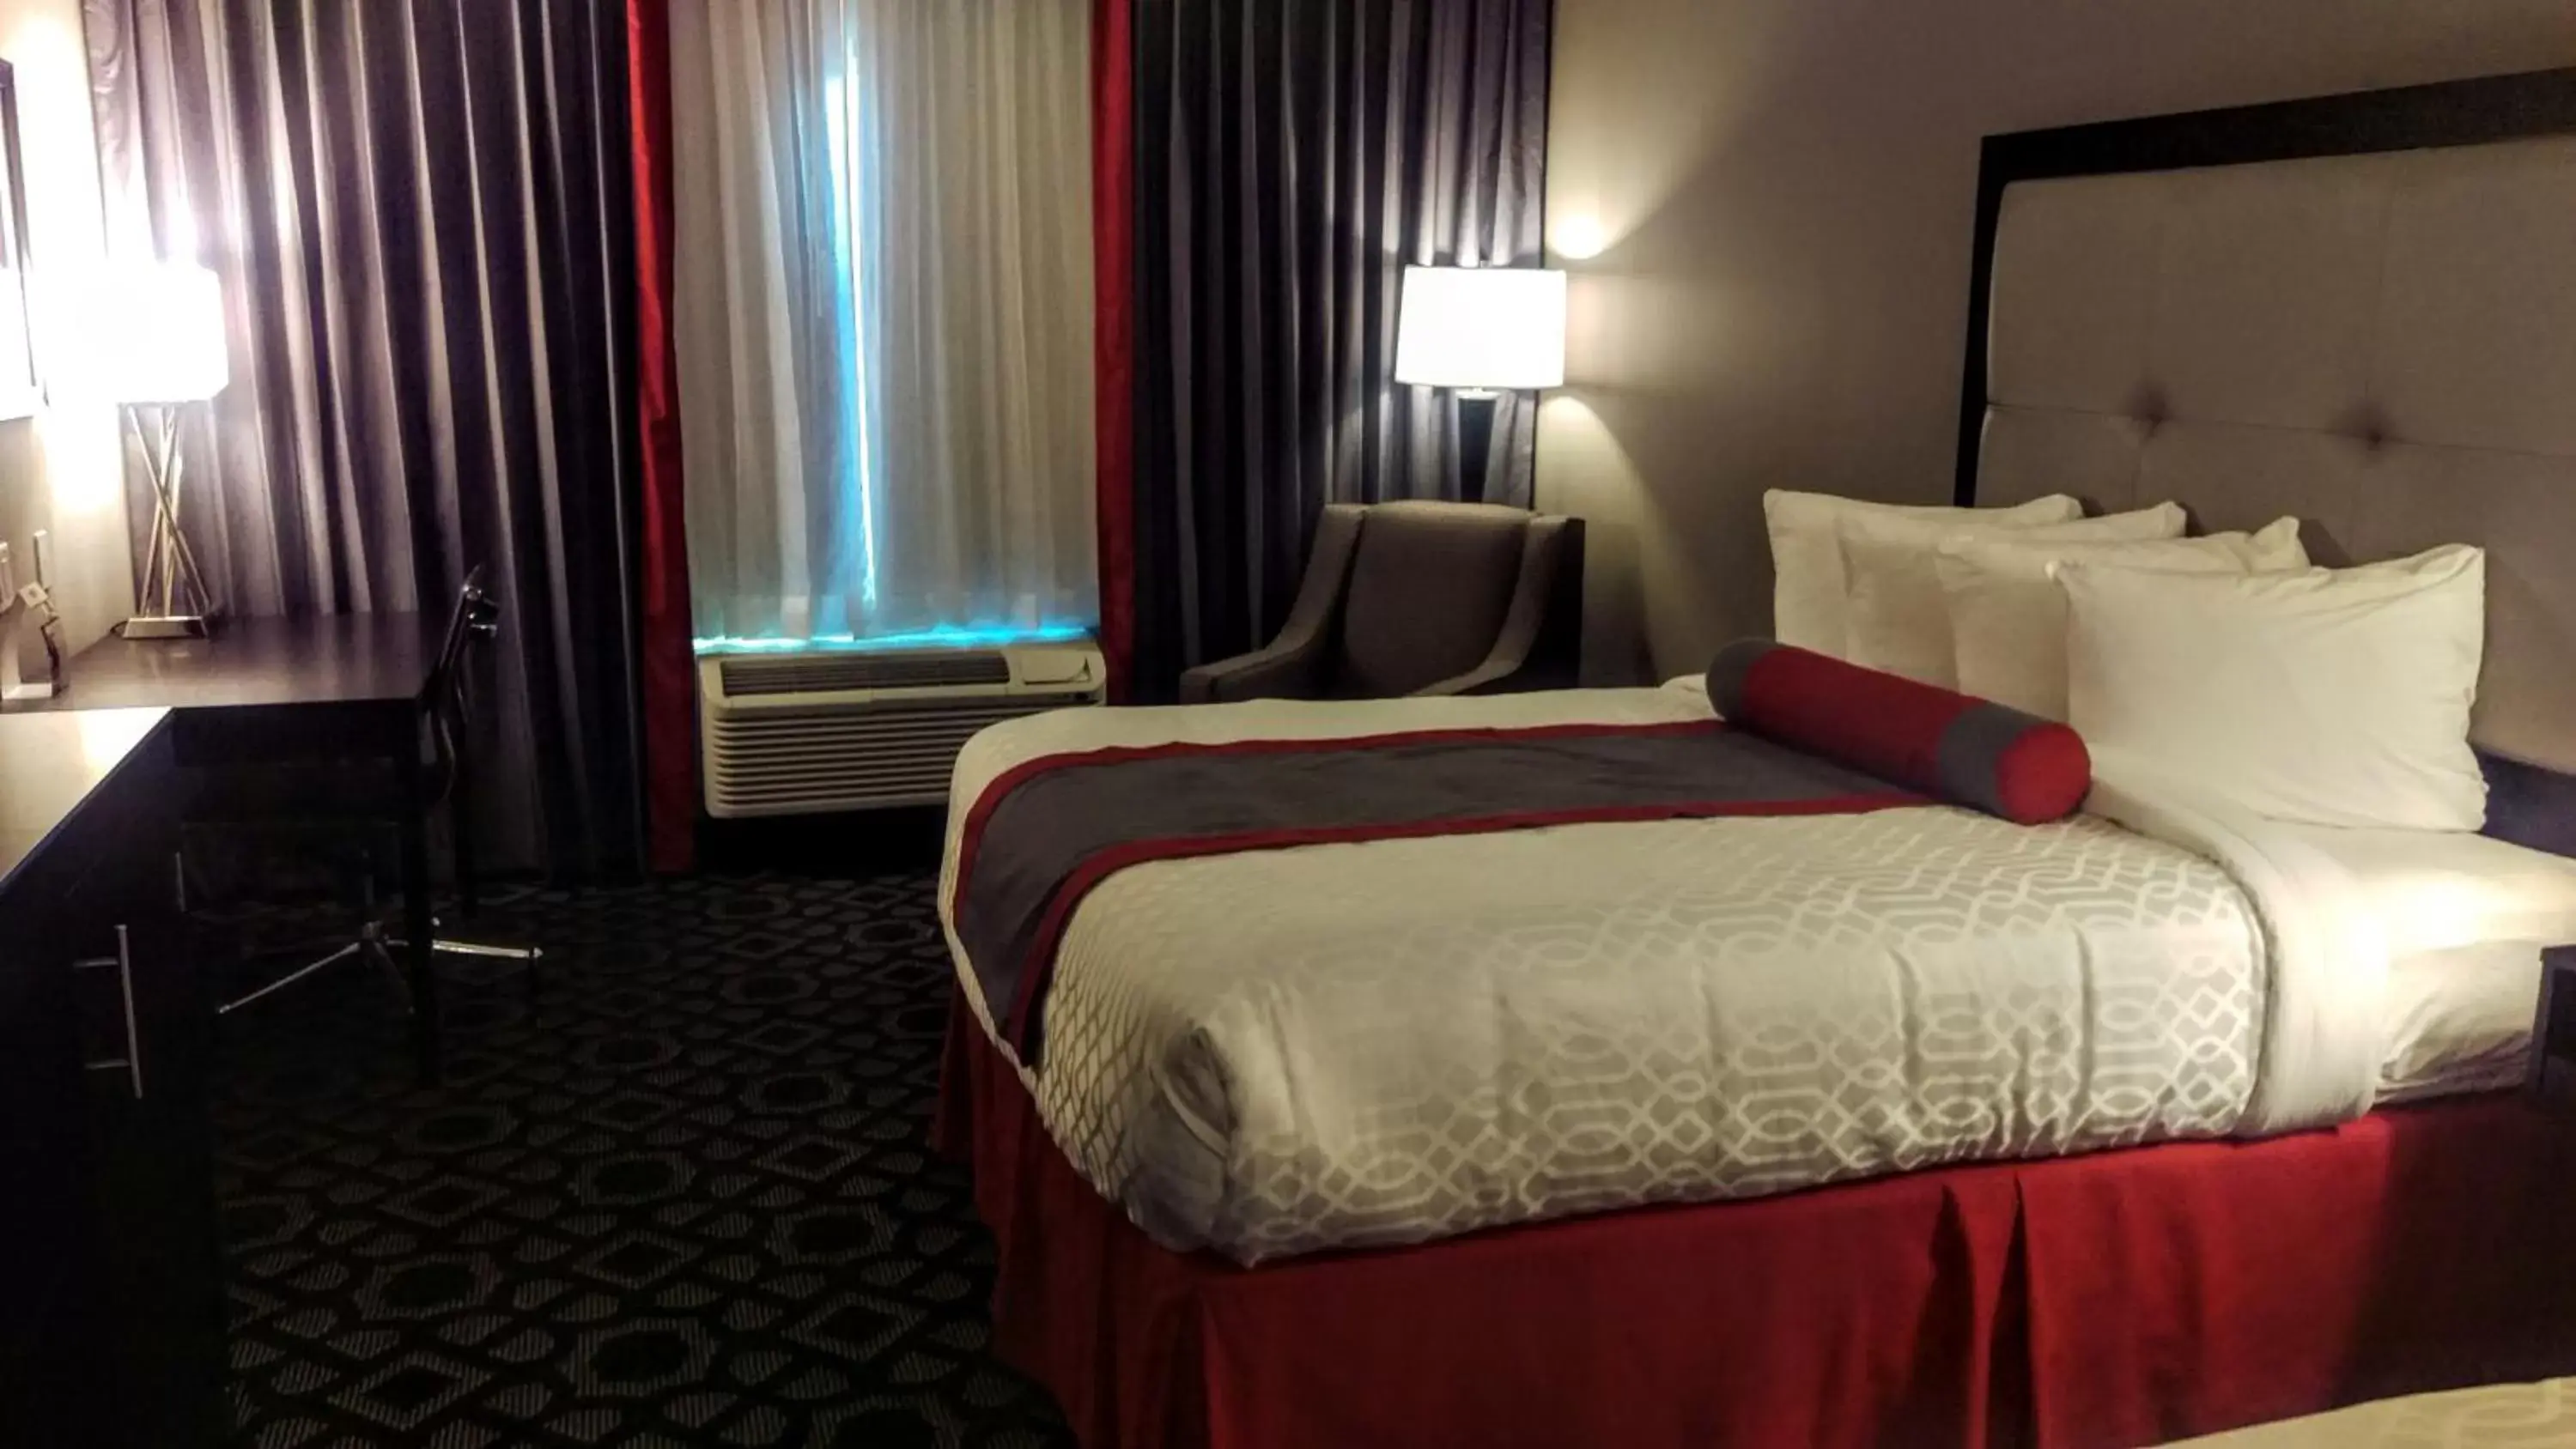 Bedroom, Bed in Best Western Plus Laredo Inn & Suites